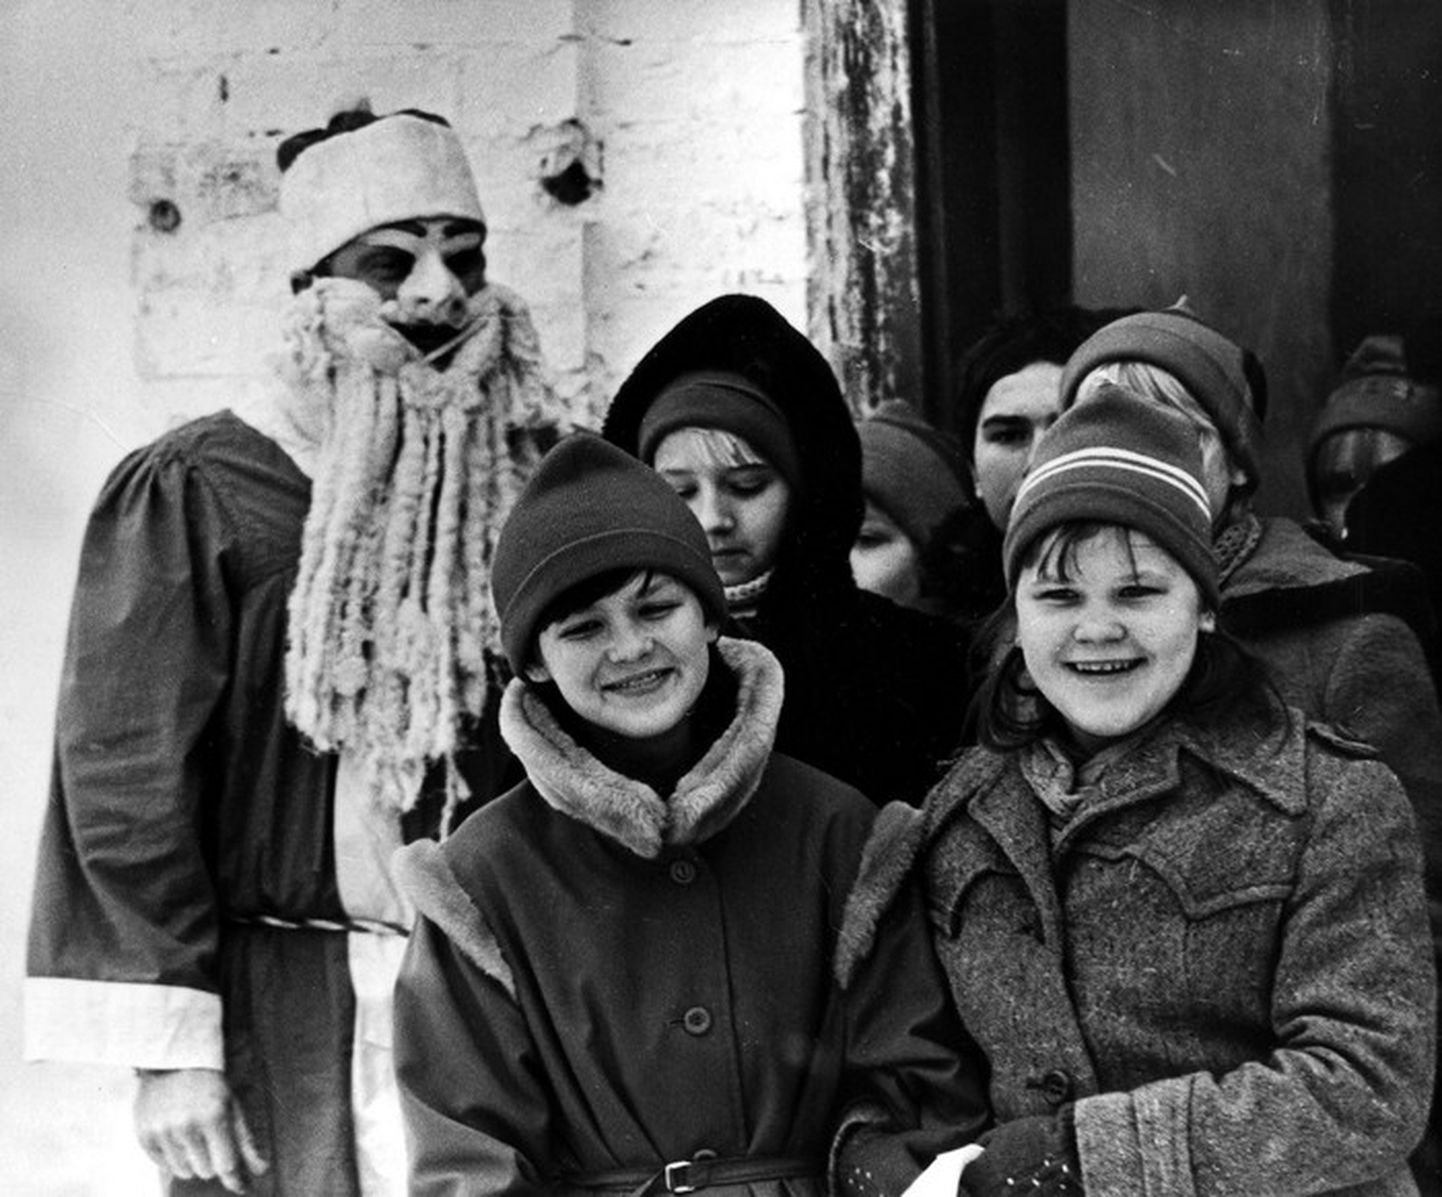 Jõuluvana lastega. (Hiiumaa muuseumid. Näärinäitus Kassaris 1986)